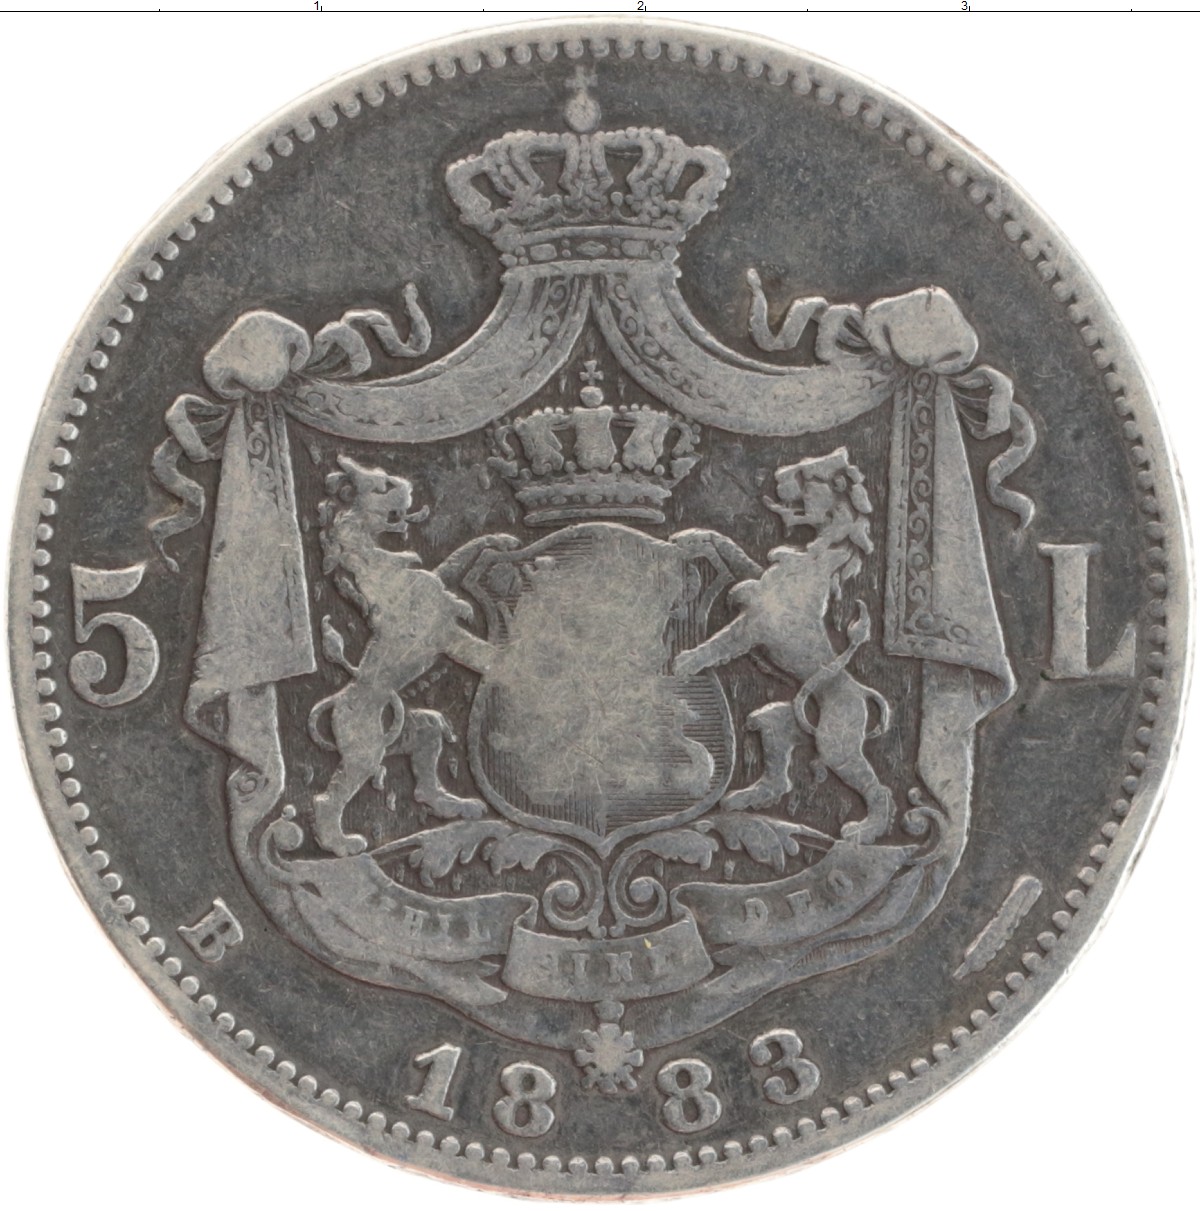 5 лей в рублях. 5 Лей 1883 год Румыния. Румыния 5 лей 1901. Монеты Румынии серебро 1887. 5 Лей 1883 UNC.